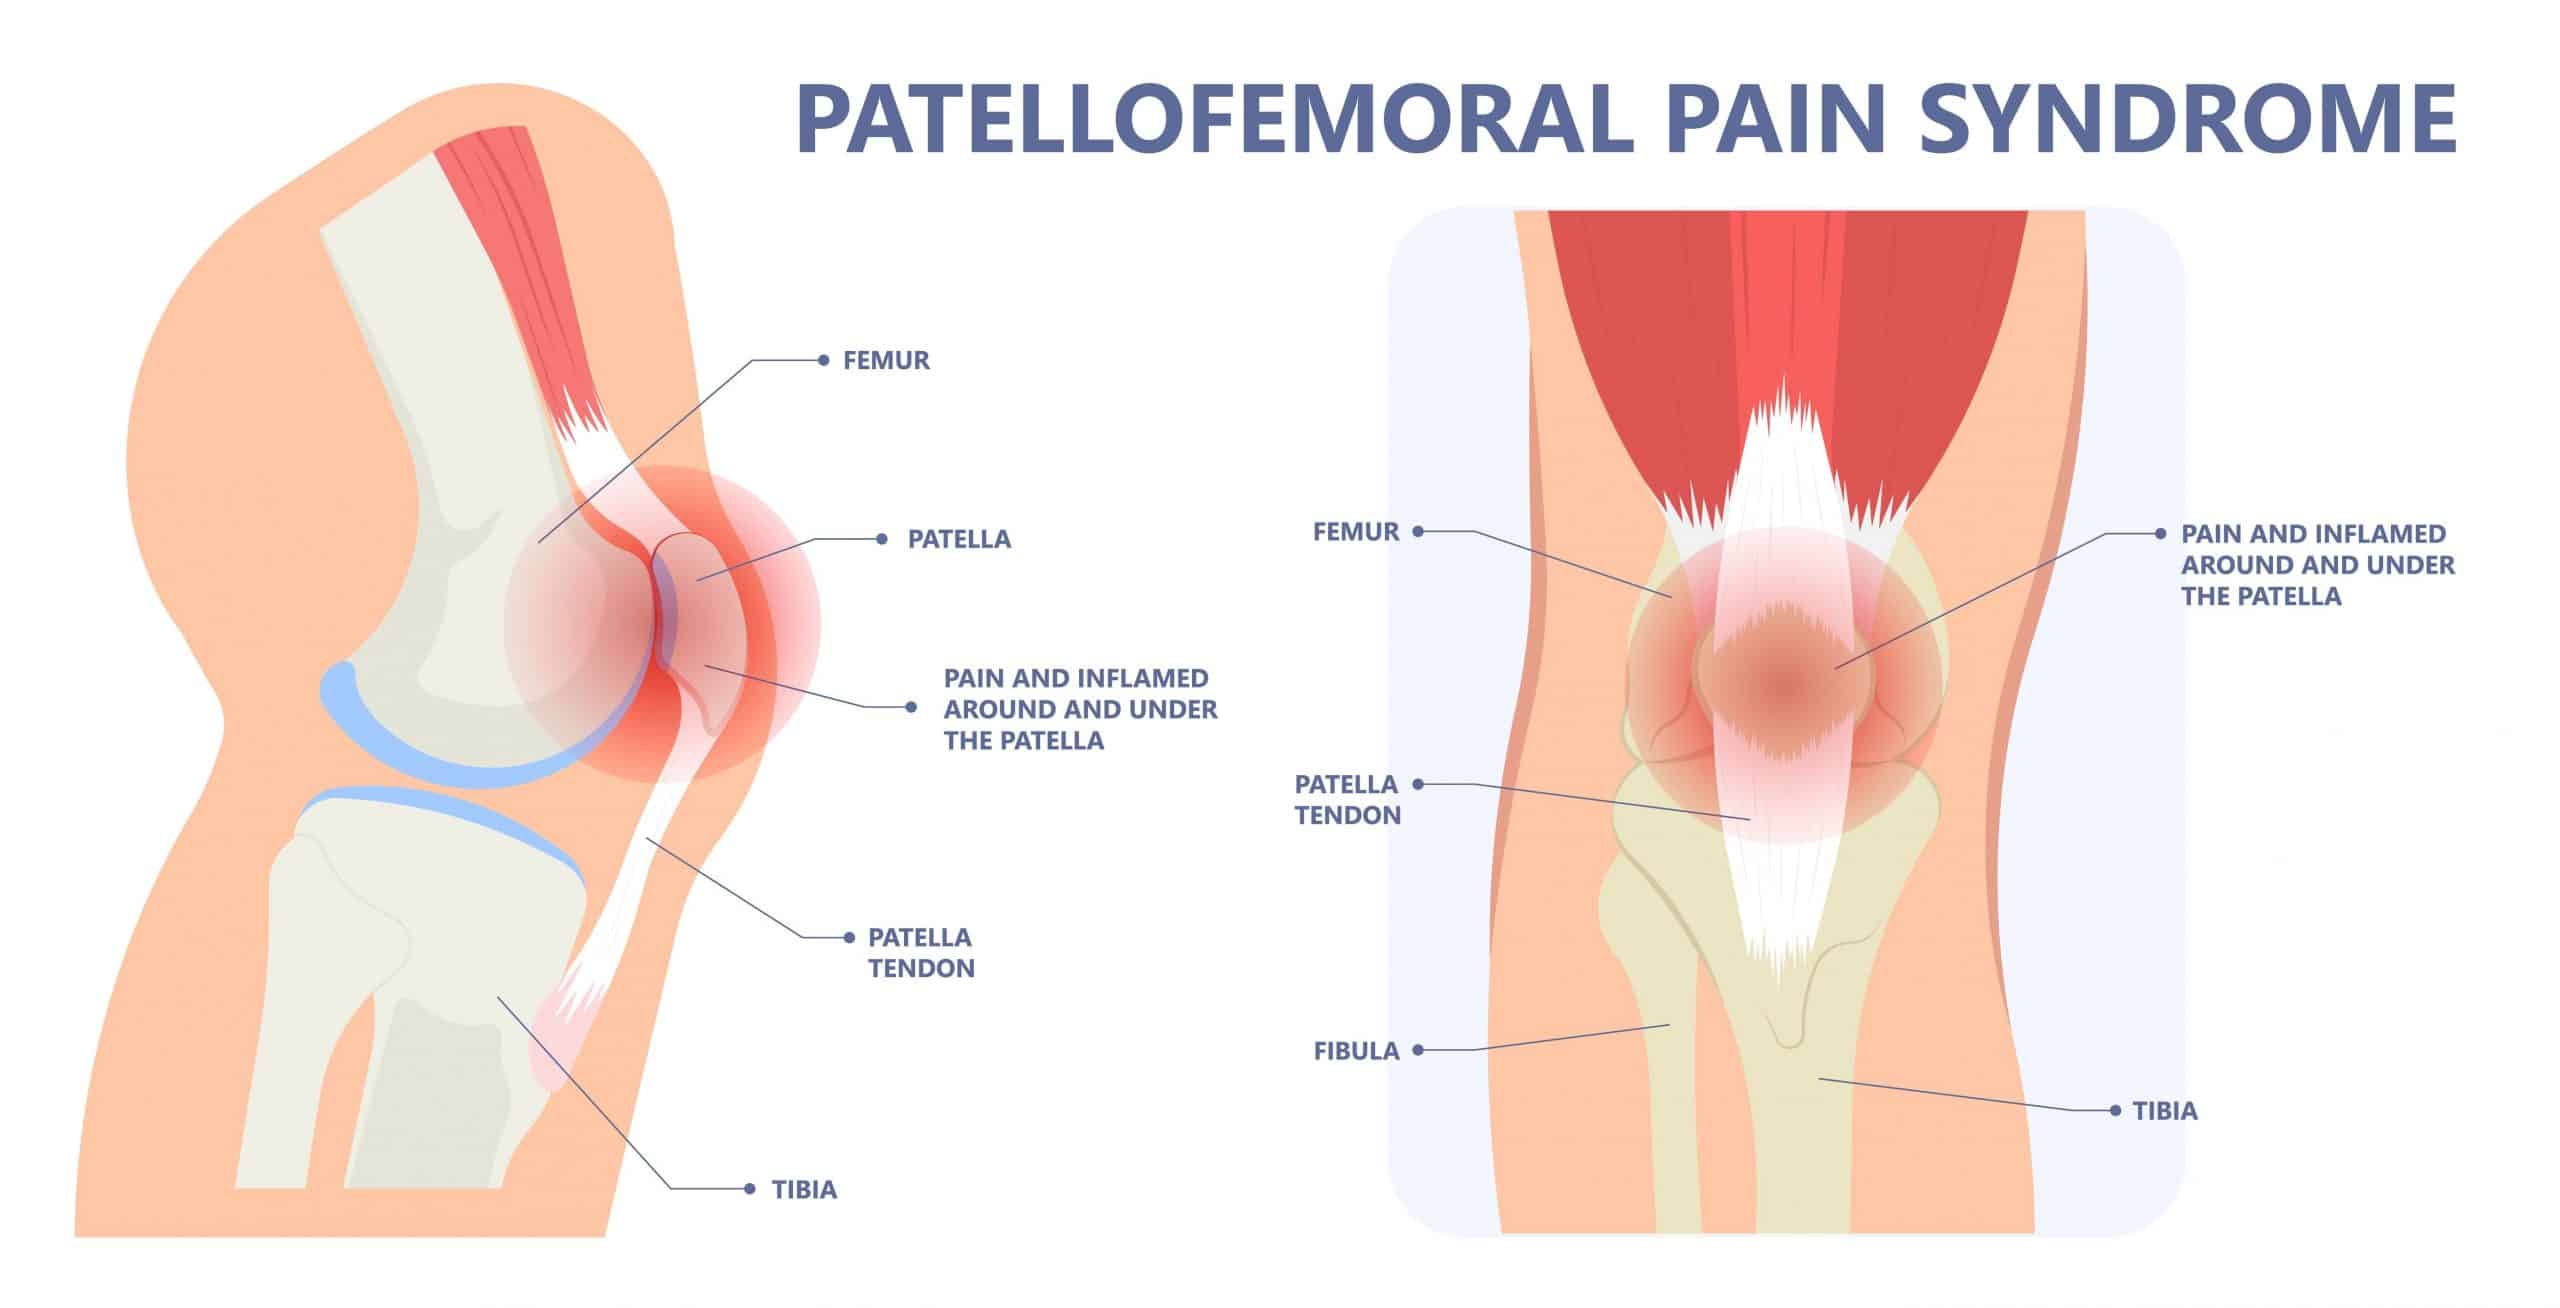 Patellofemoral Dysfunction Pain Syndrome